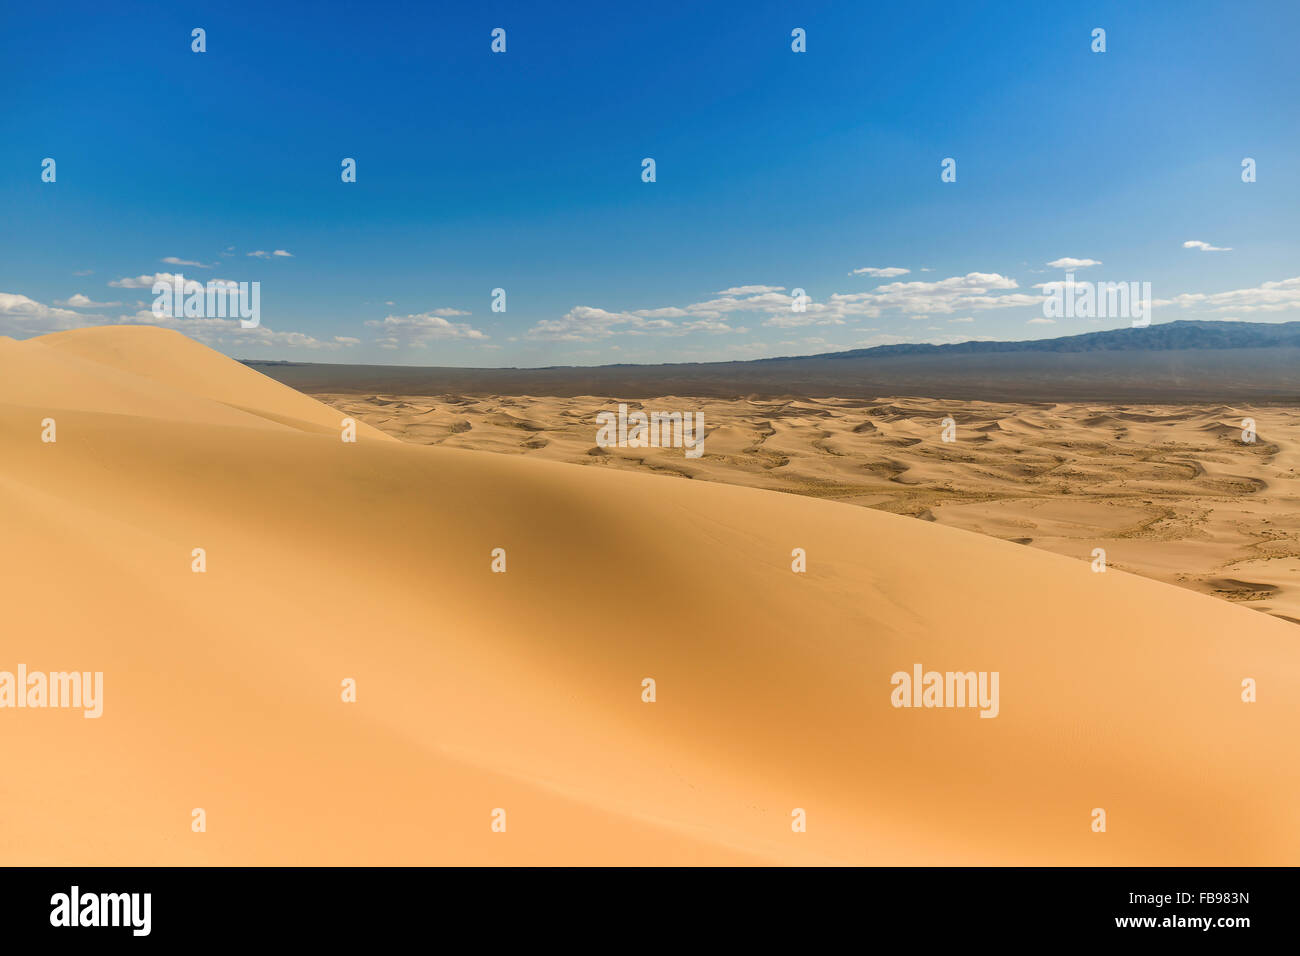 Singing Sand Dunes of the Gobi Desert in Mongolia Stock Photo